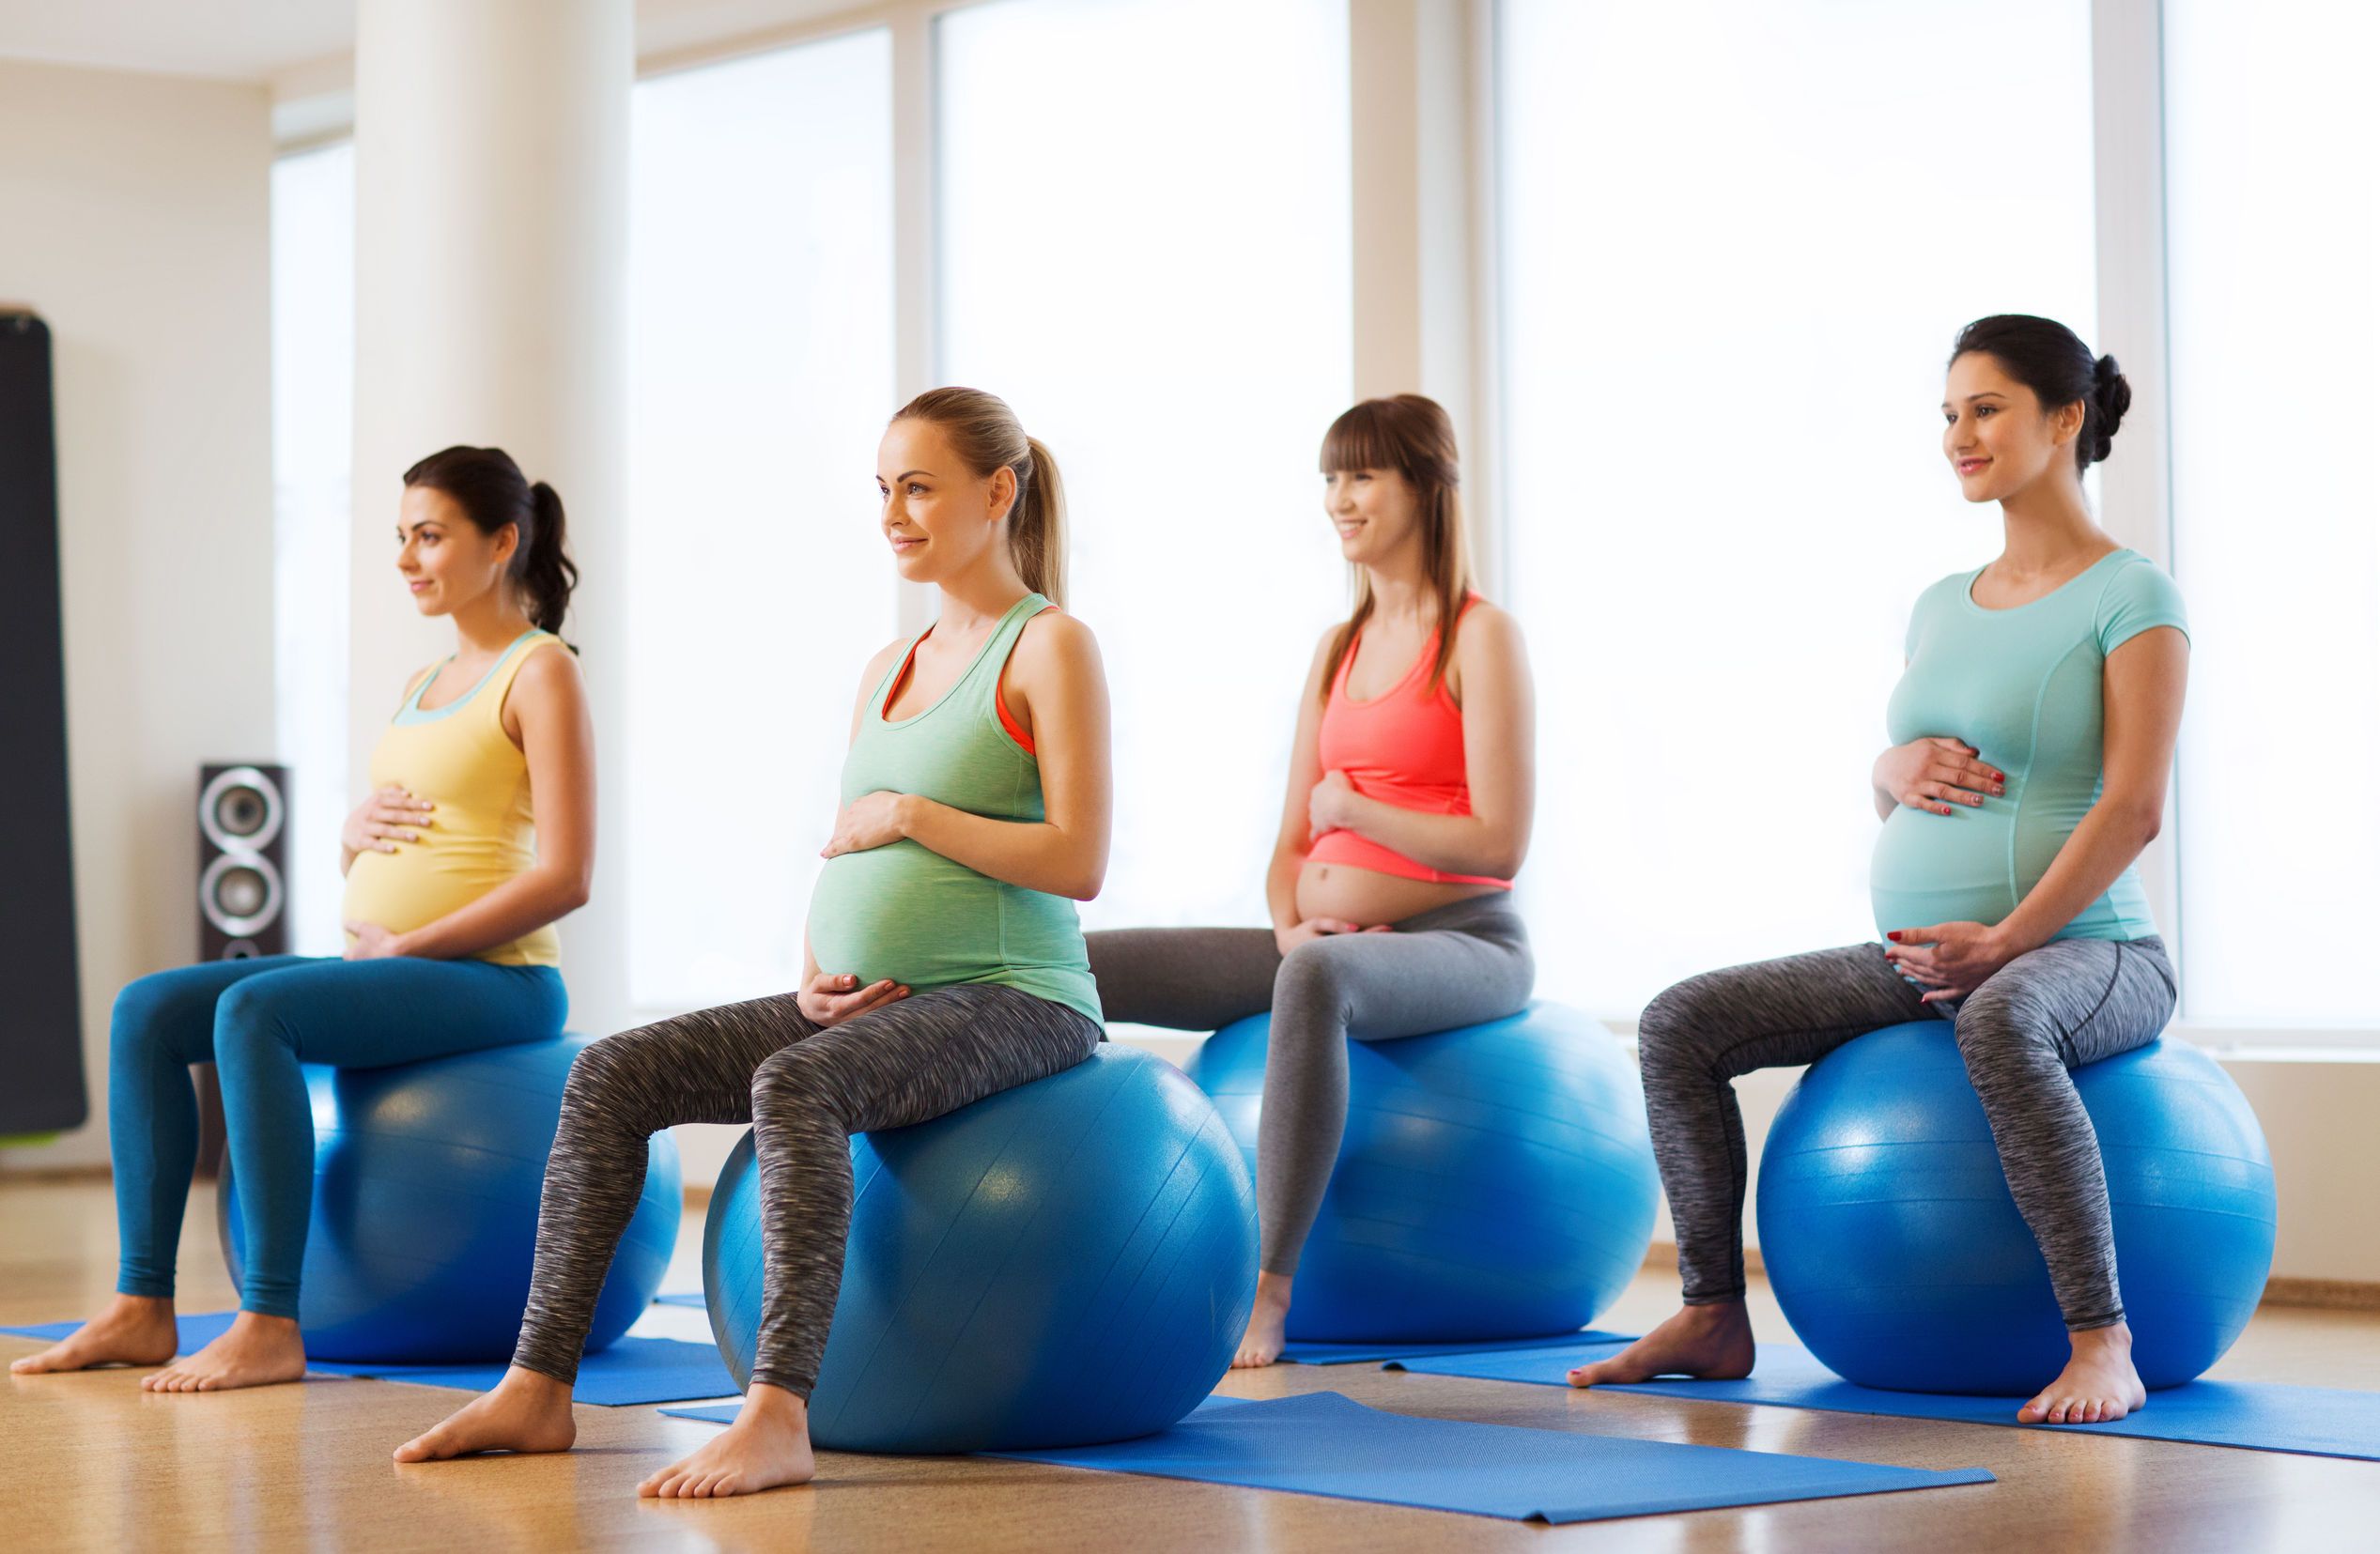 الرياضة للحامل: وما هي أفضل التمارين الرياضية للحامل ؟